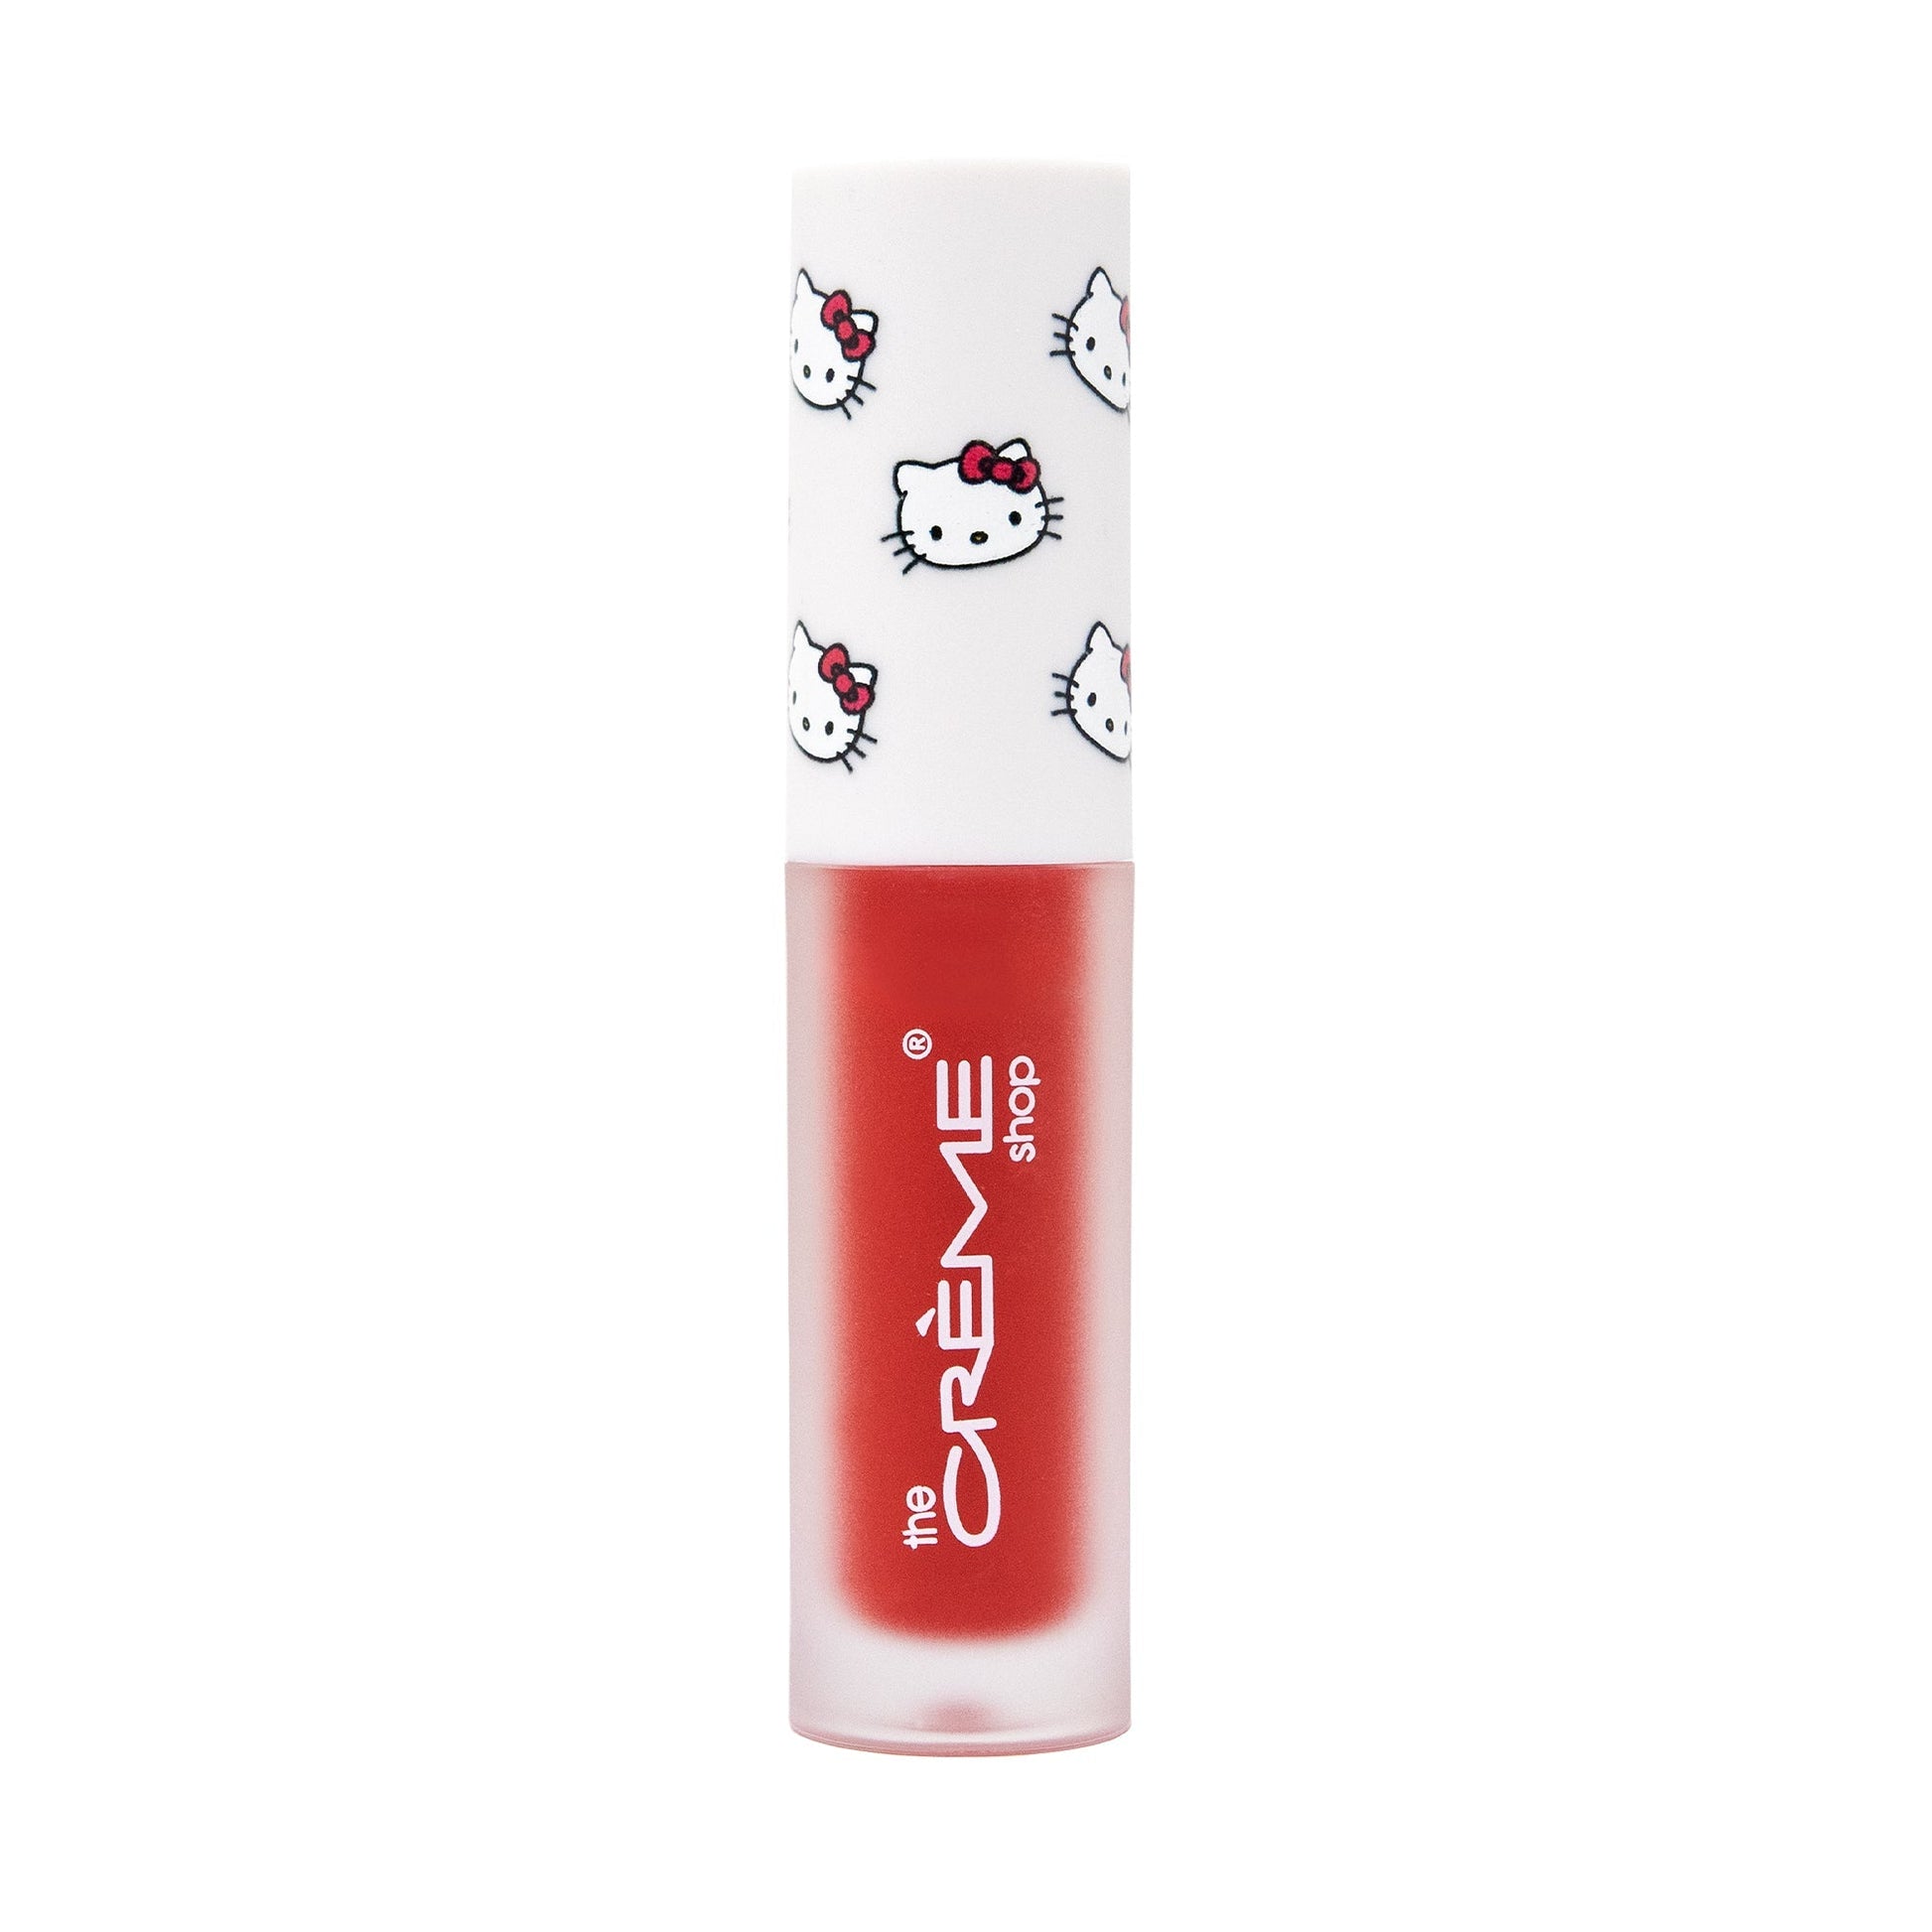 The Crème Shop x Hello Kitty Kawaii Kiss Moisturizing Lip Oil - Apple Flavored Lip Oil The Crème Shop x Sanrio 